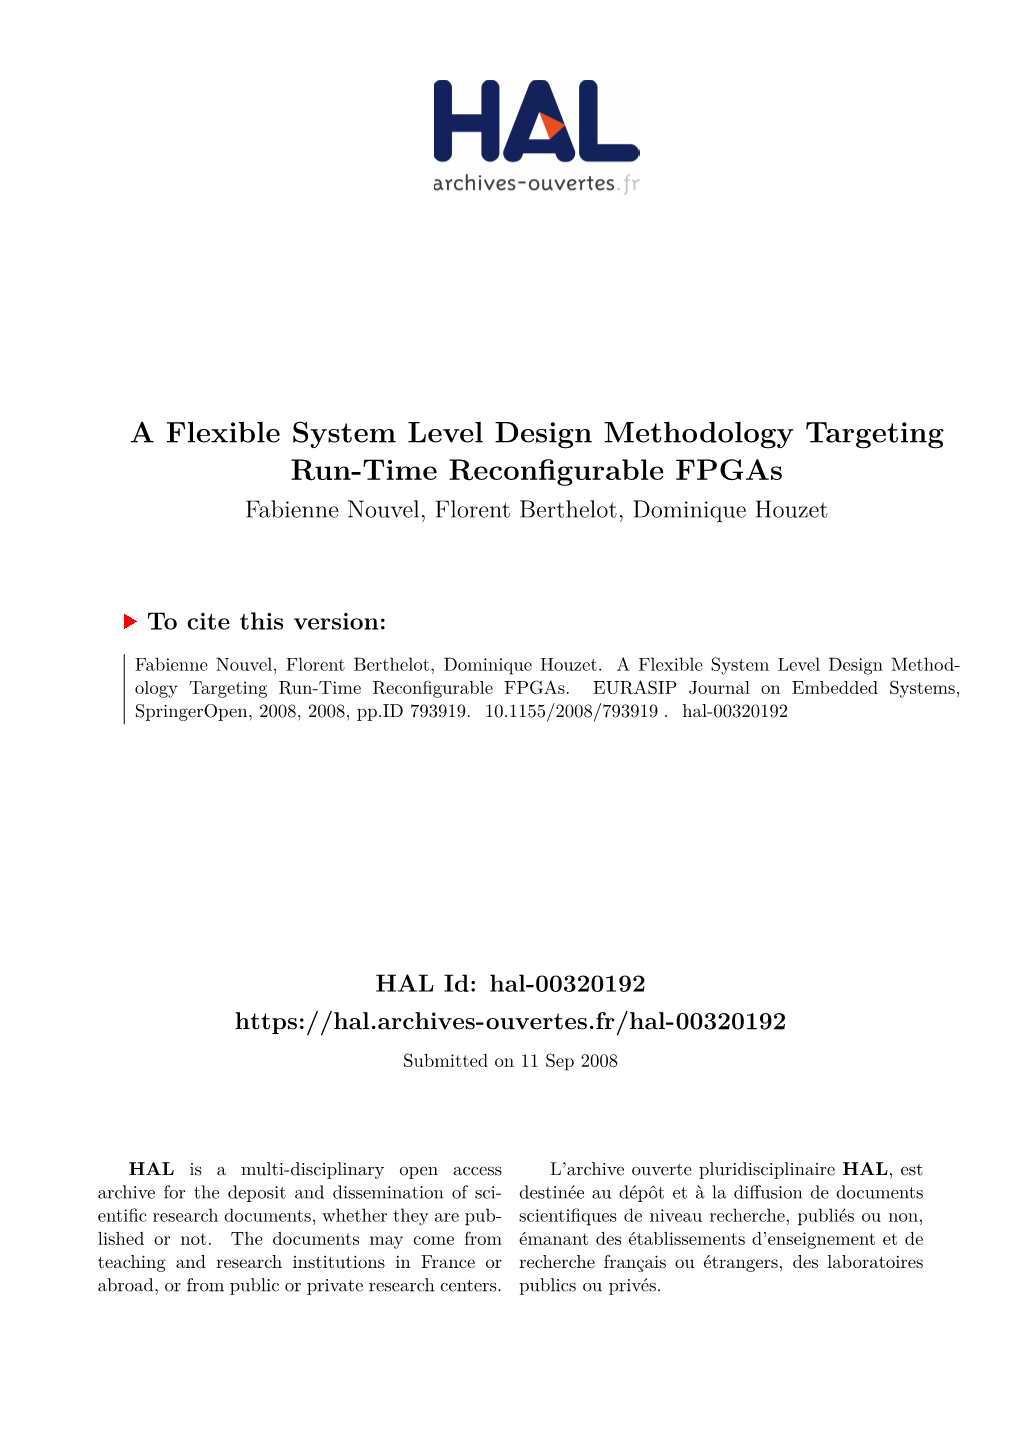 A Flexible System Level Design Methodology Targeting Run-Time Reconfigurable Fpgas Fabienne Nouvel, Florent Berthelot, Dominique Houzet